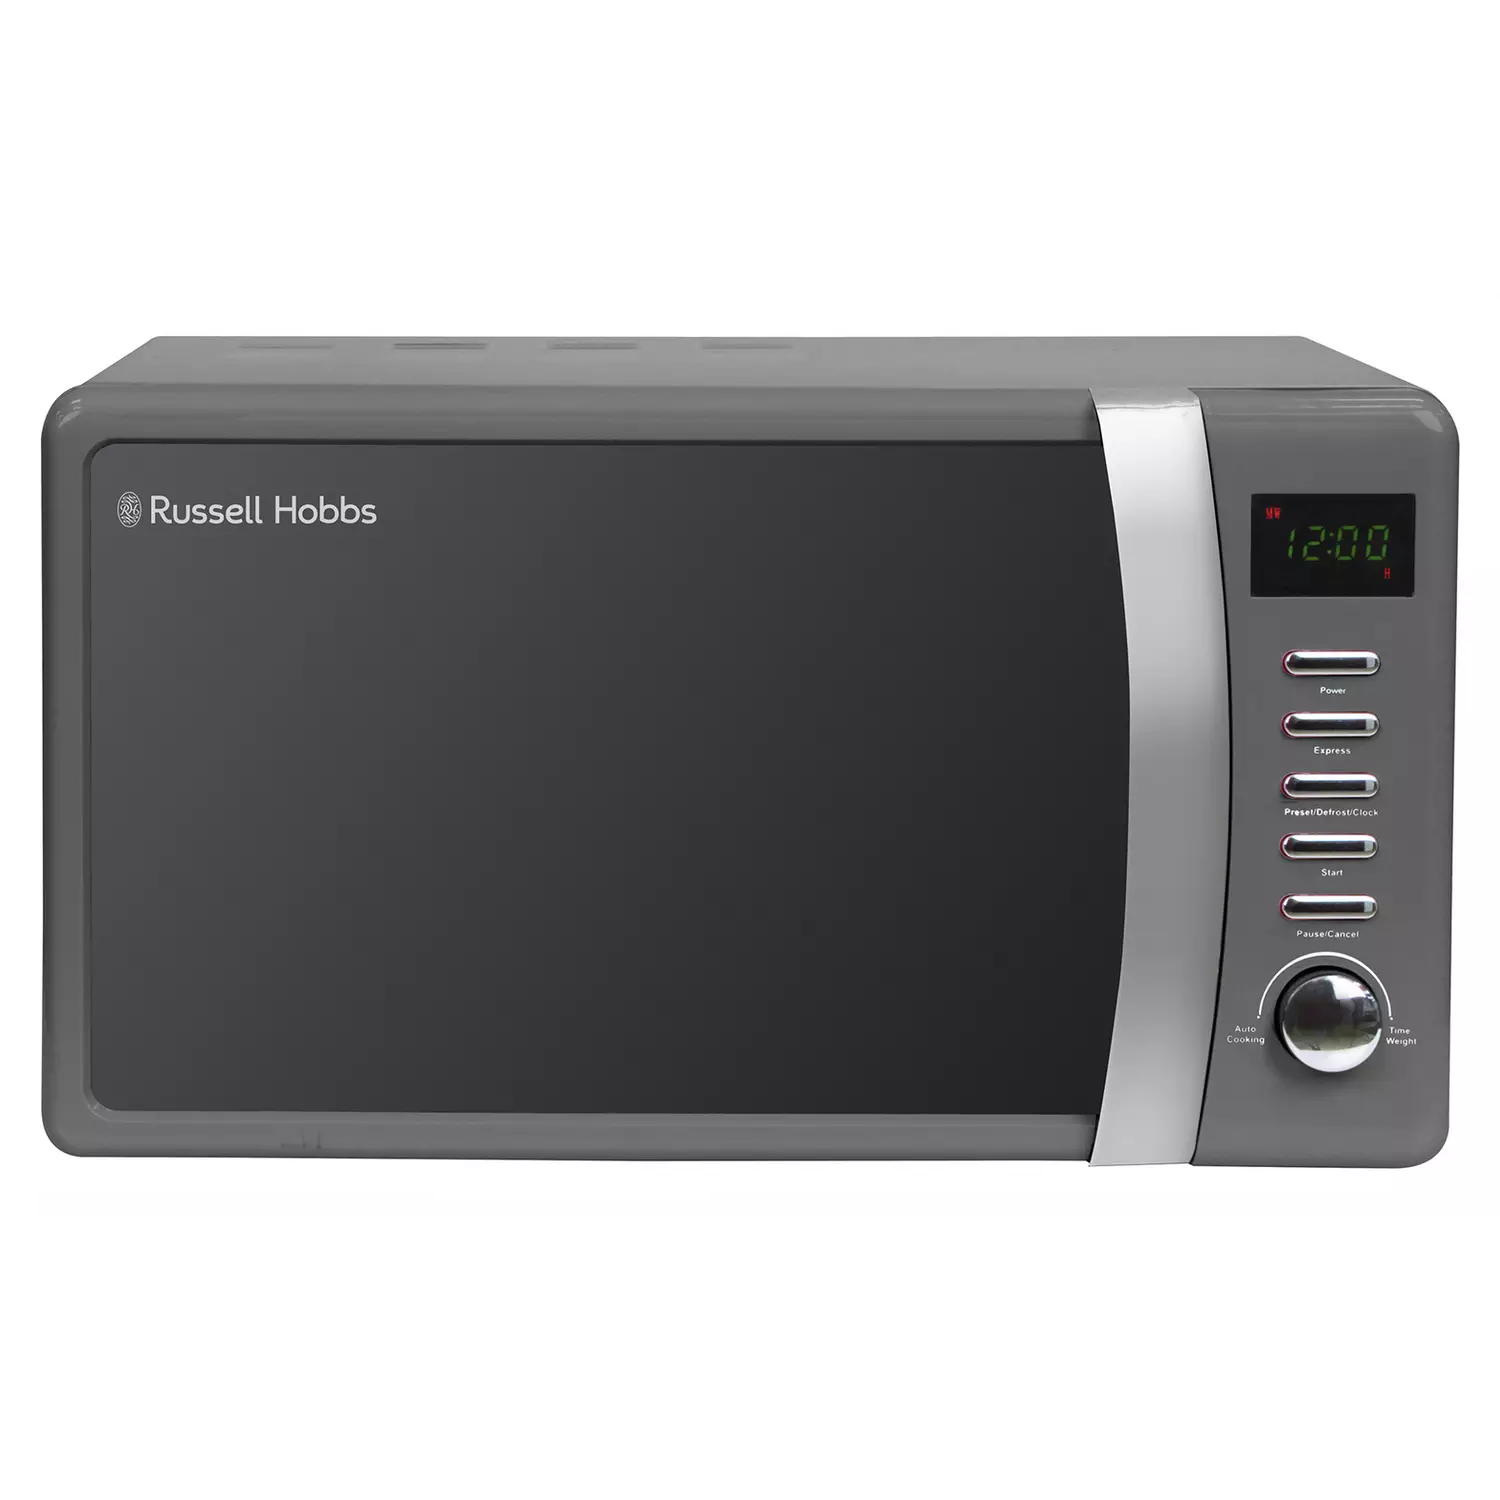 Russell Hobbs Worcester 700W Standard Microwave – Grey